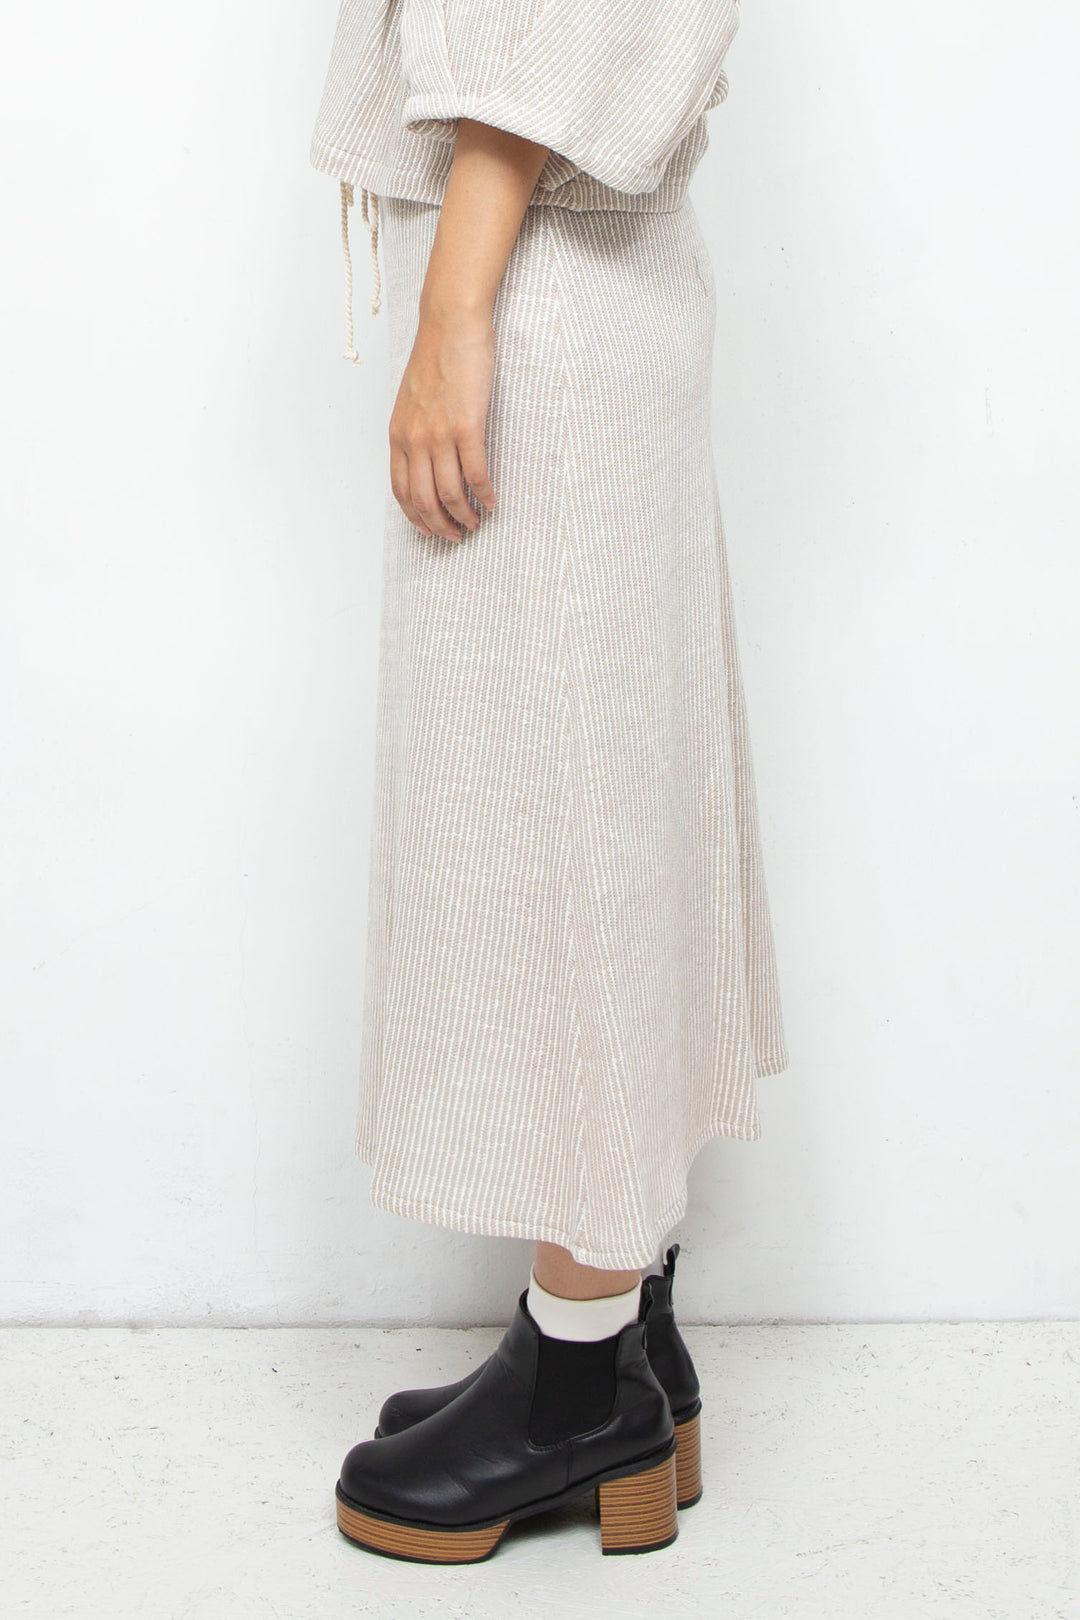 Cotton Linen Skirt BEIGE